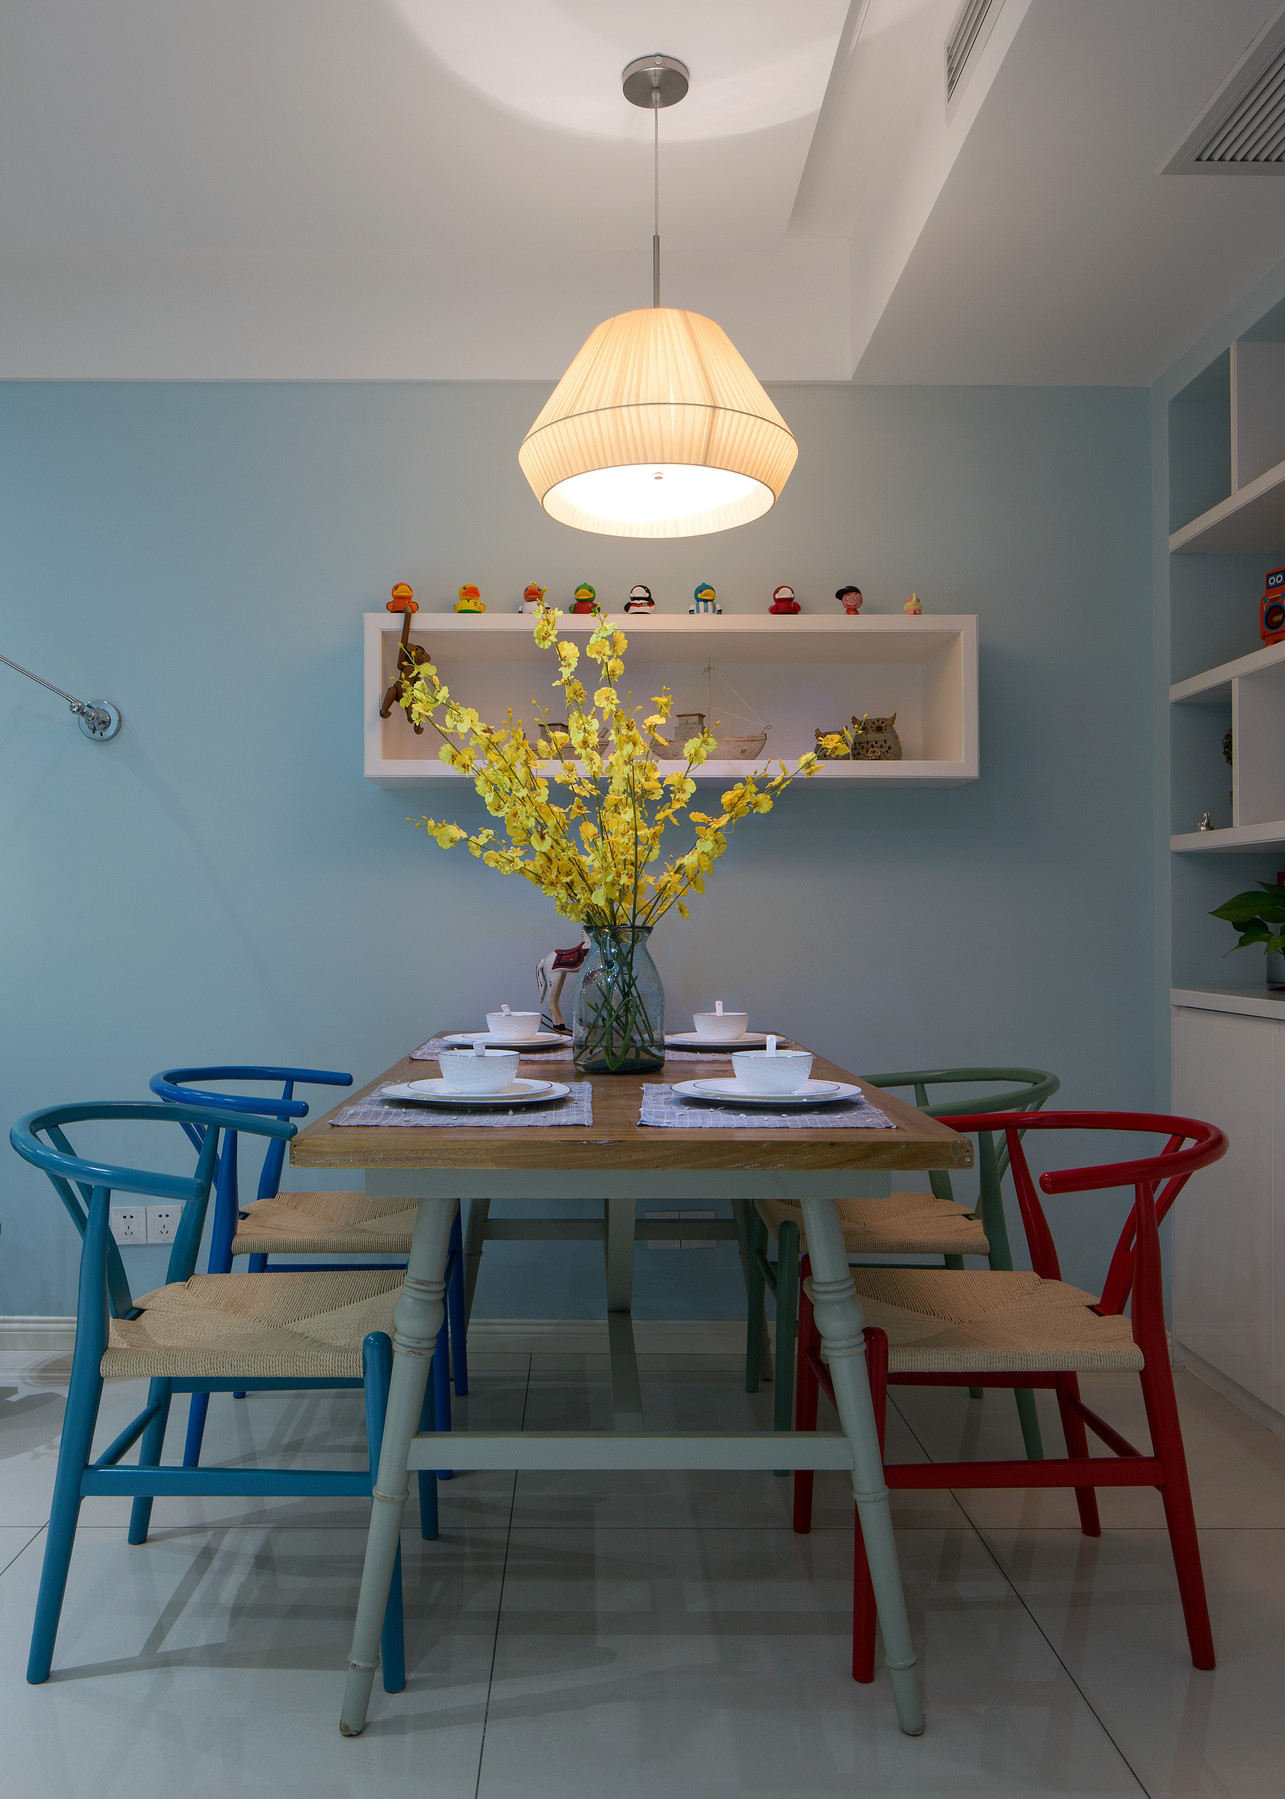 唯美浅蓝色北欧田园风餐厅木质桌椅设计